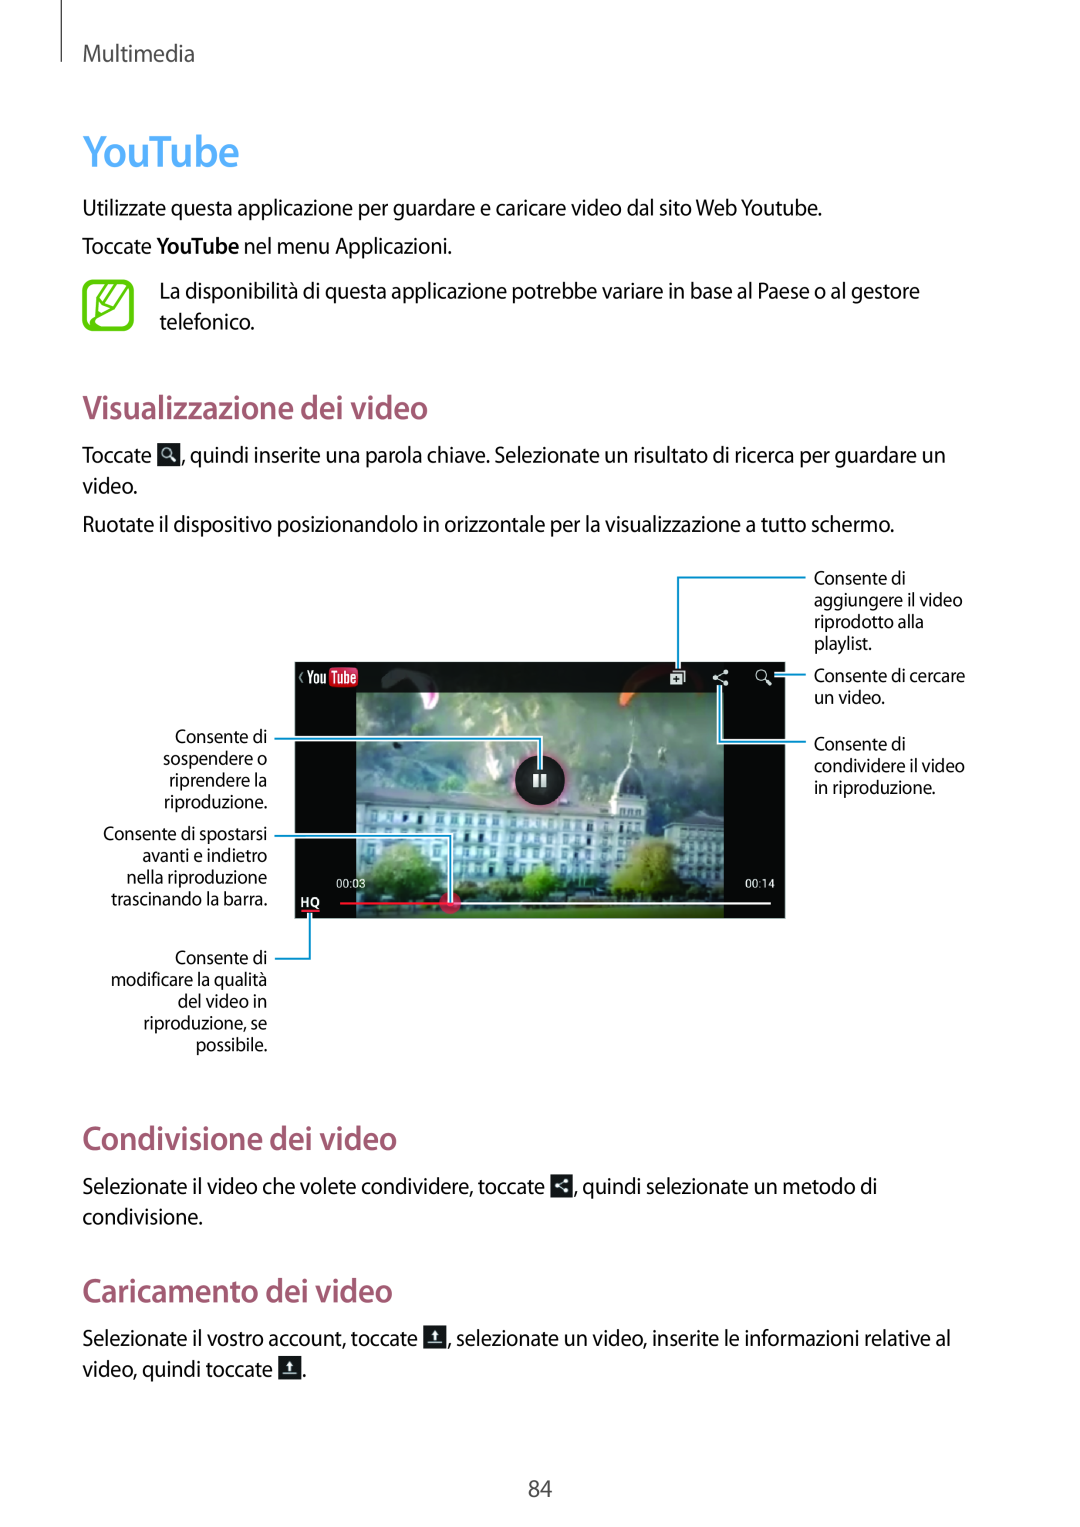 Samsung GT-I9195ZKAAUT manual YouTube, Visualizzazione dei video, Caricamento dei video, Condivisione dei video, Multimedia 